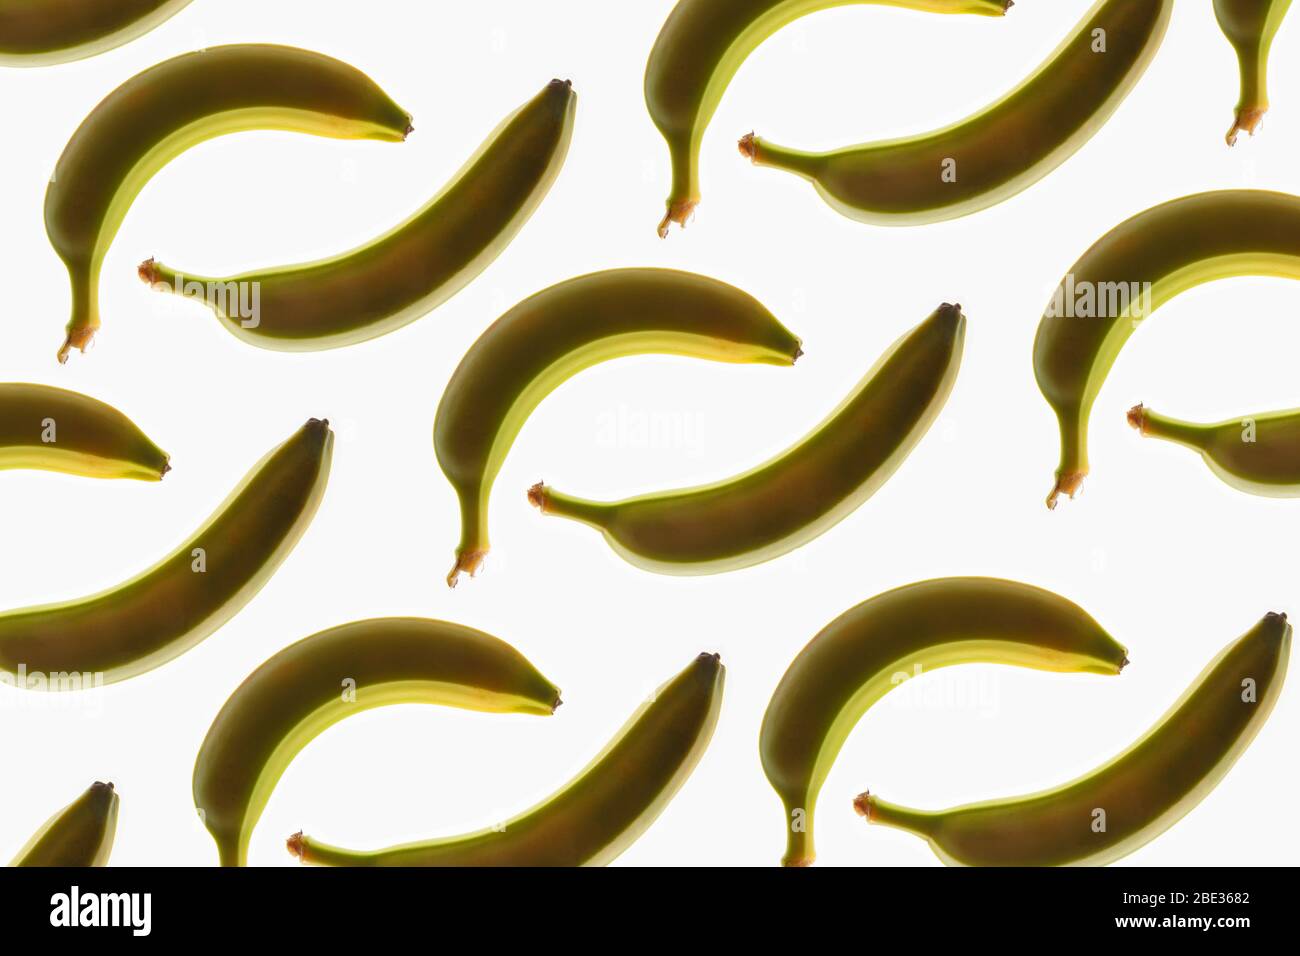 Ein wunderbares Bild von einem interessanten Muster von Bananen, vor einem hellen weißen Hintergrund, flat Stockfoto